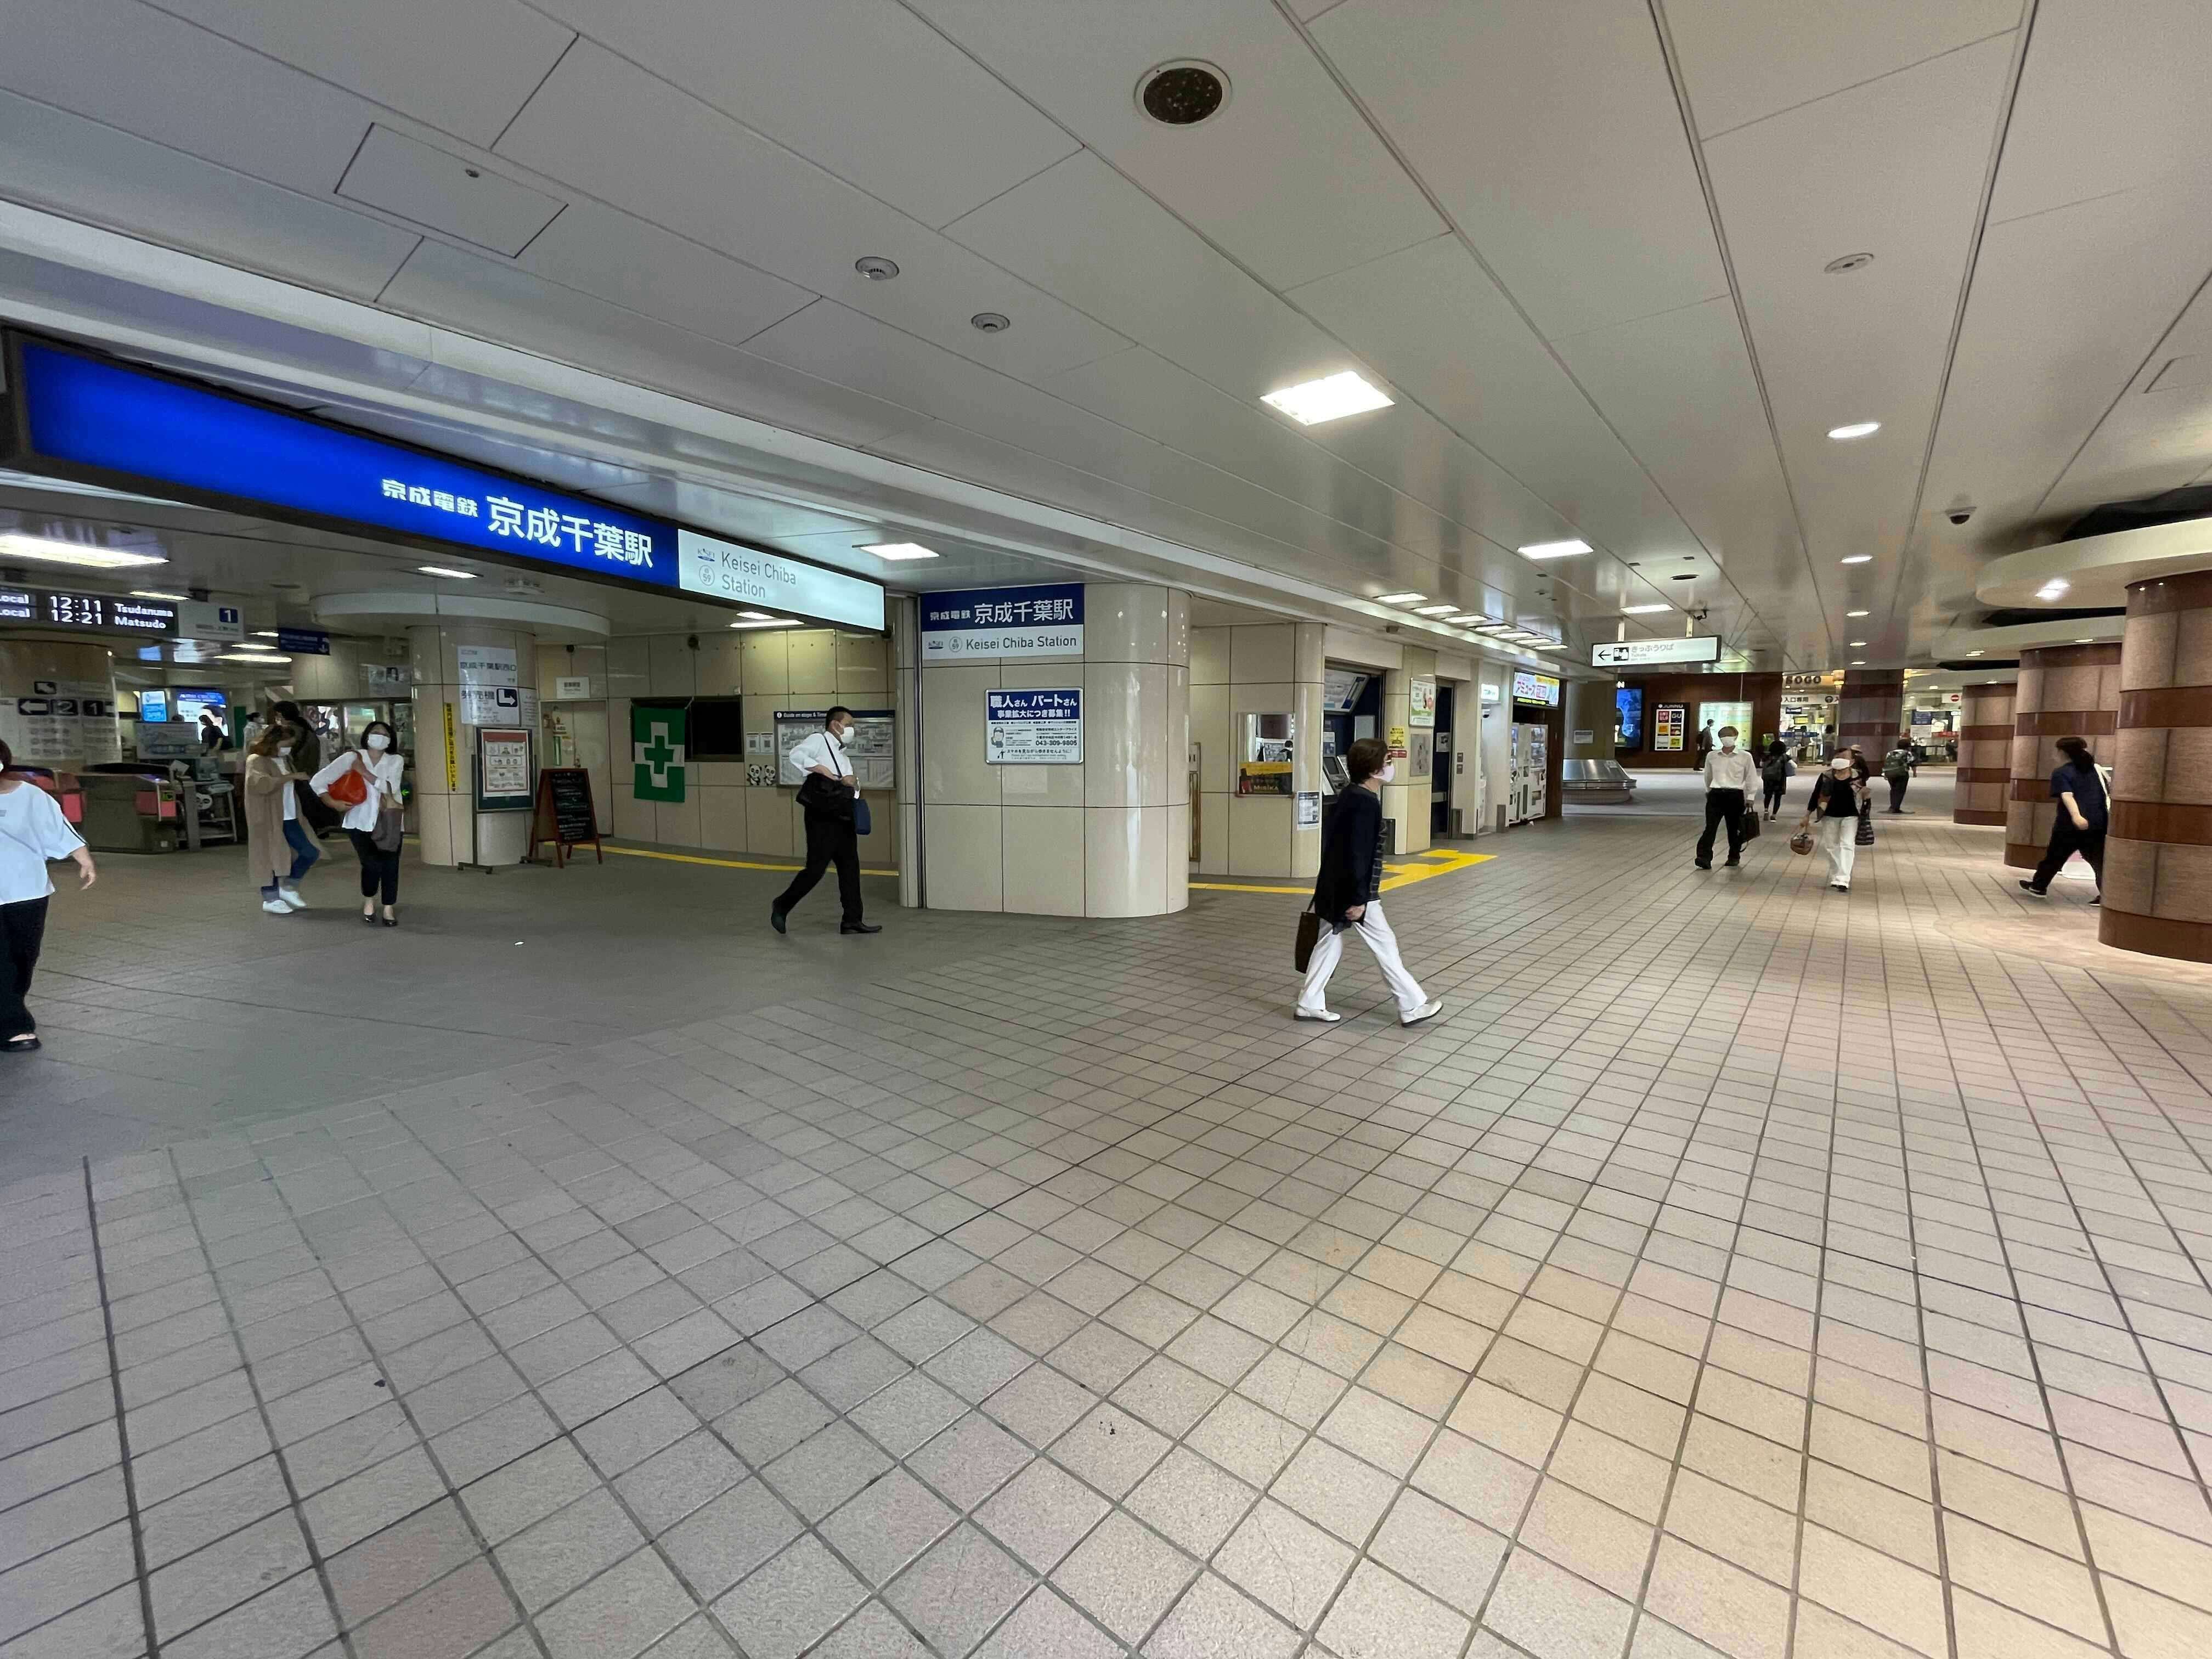 【京成千葉駅】食物販やポップアップストアに最適な人の流動が多い改札前コンコース